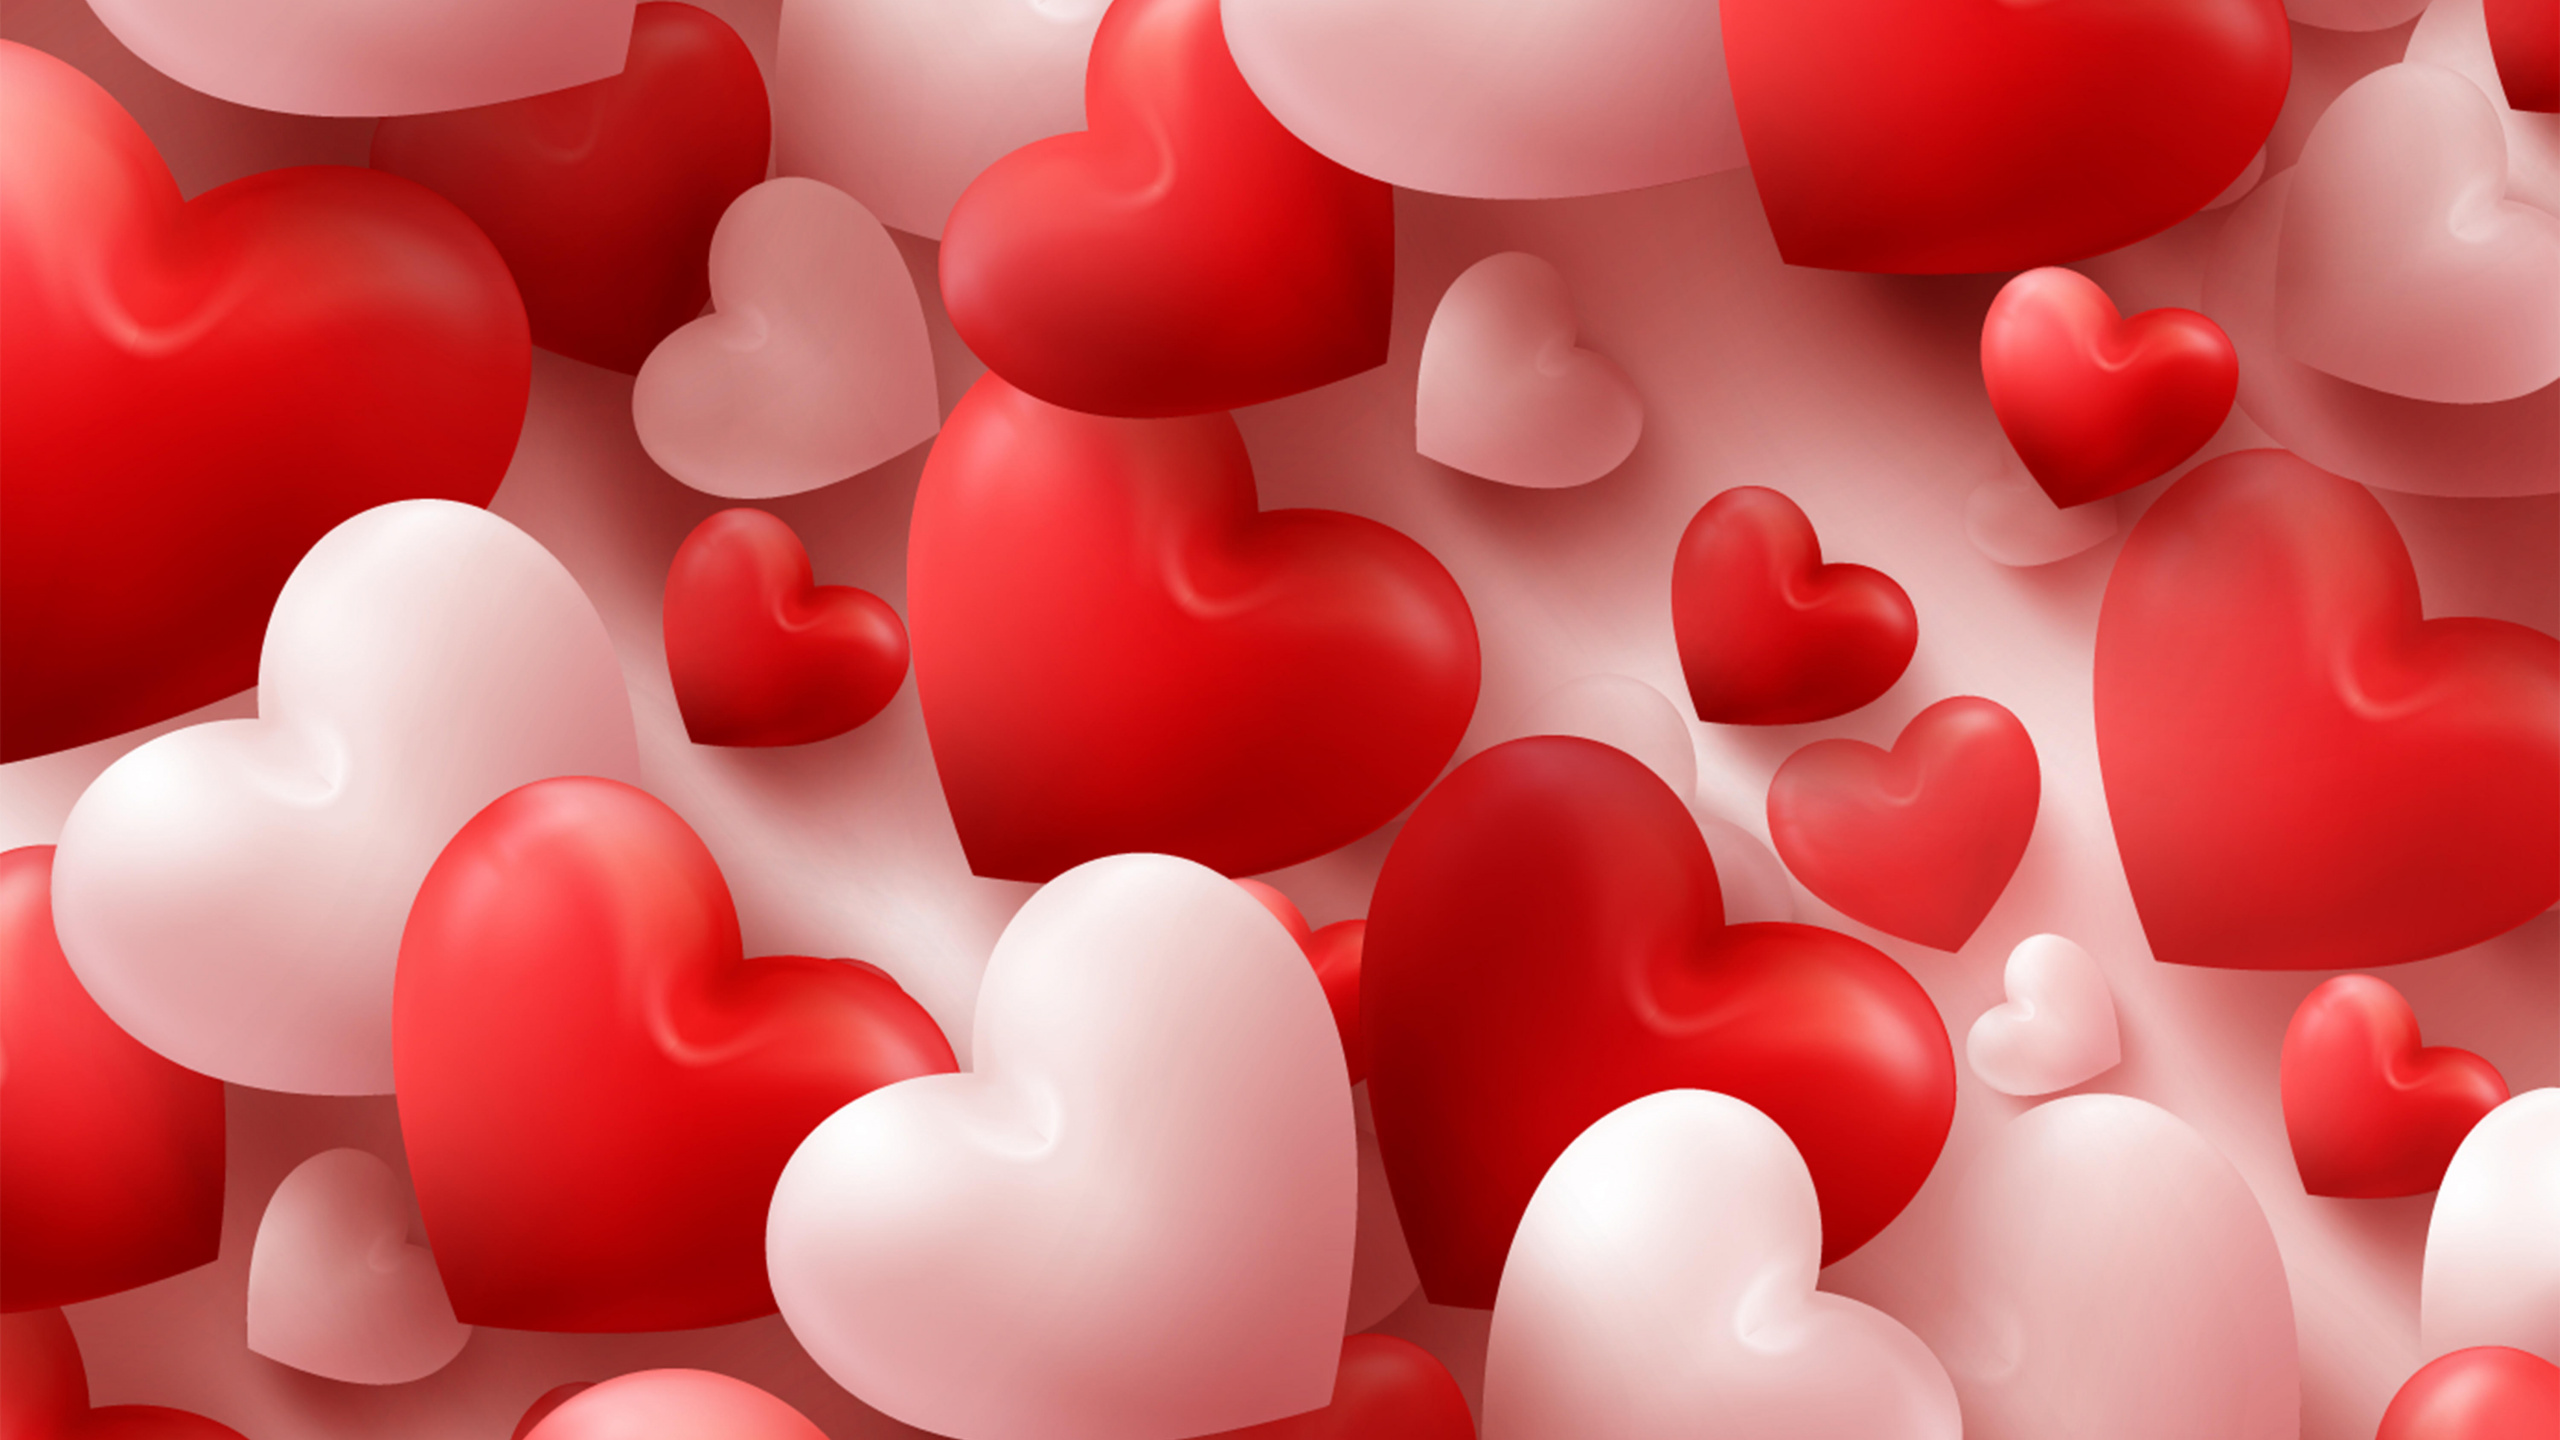 el Día de San Valentín, Coraz, Rojo, Amor, Rosa. Wallpaper in 2560x1440 Resolution